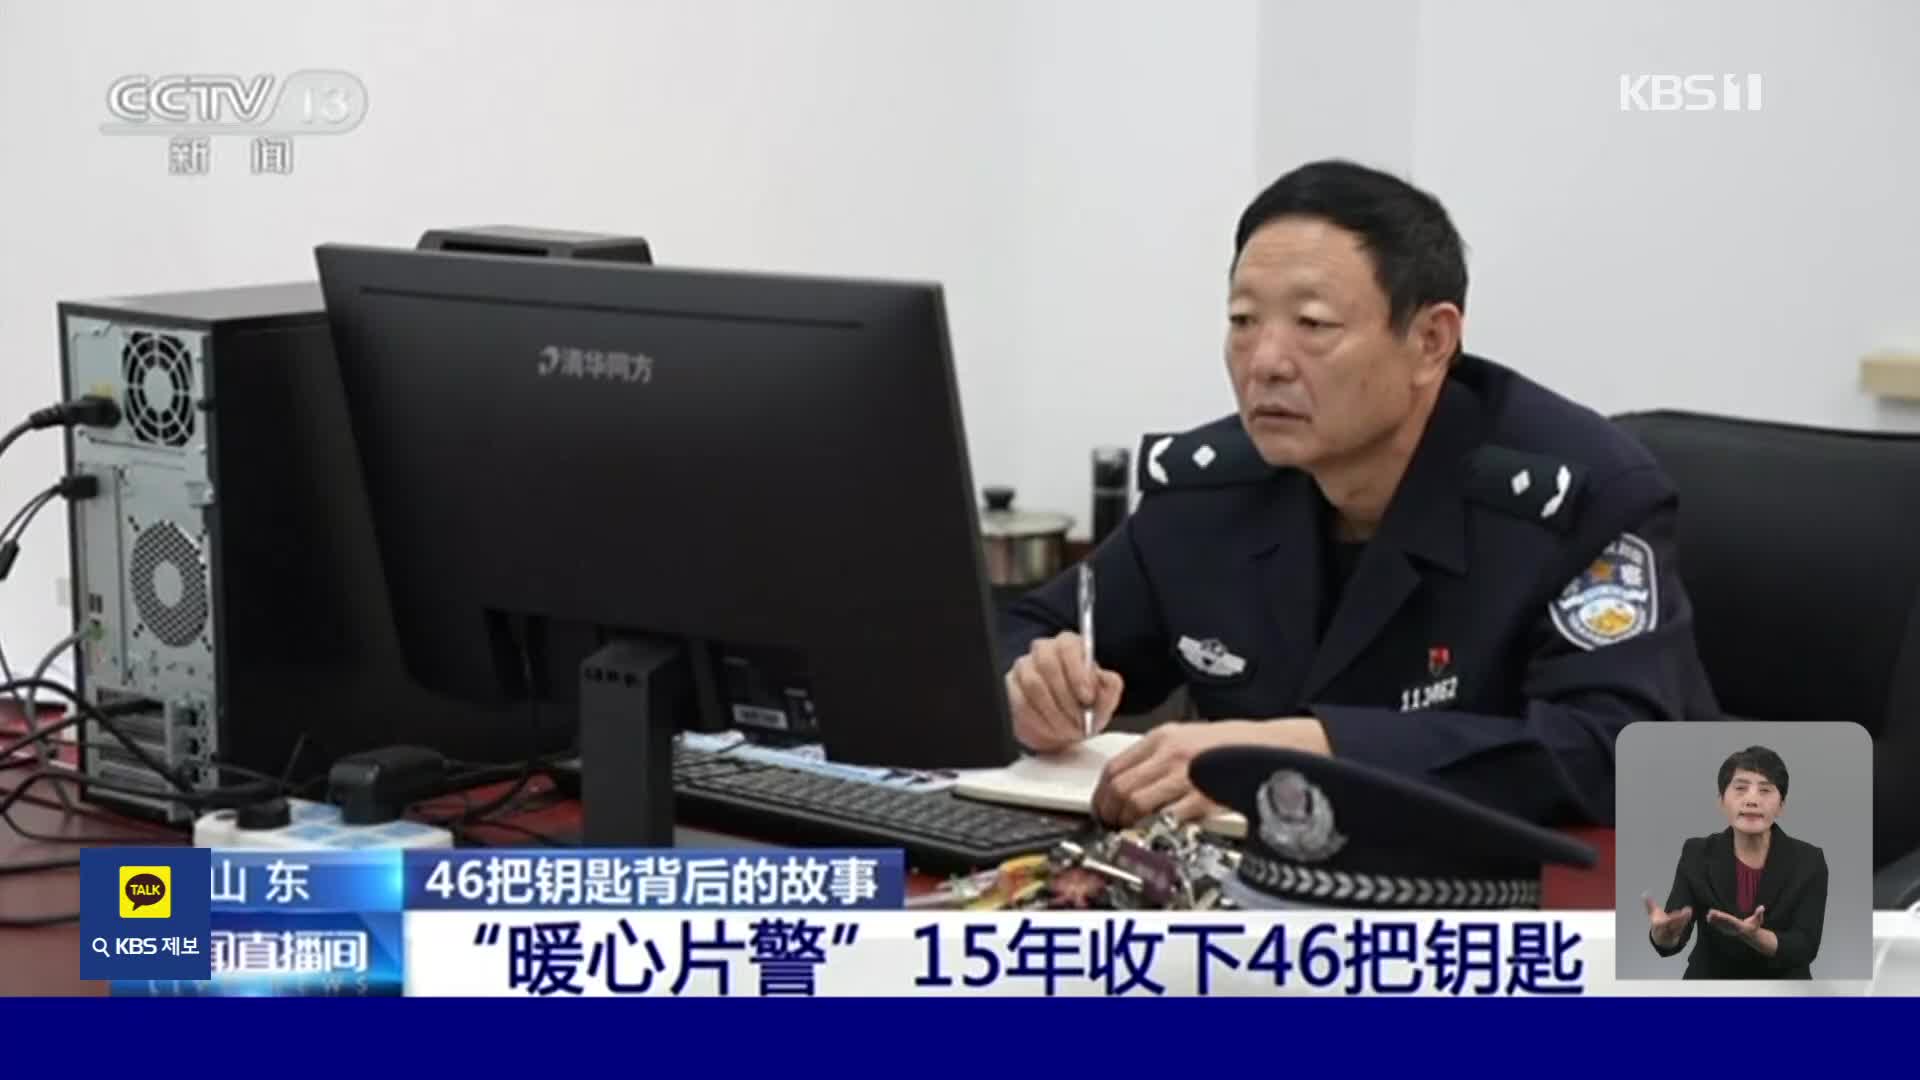 중국, 열쇠 46개 가지고 다니는 경찰